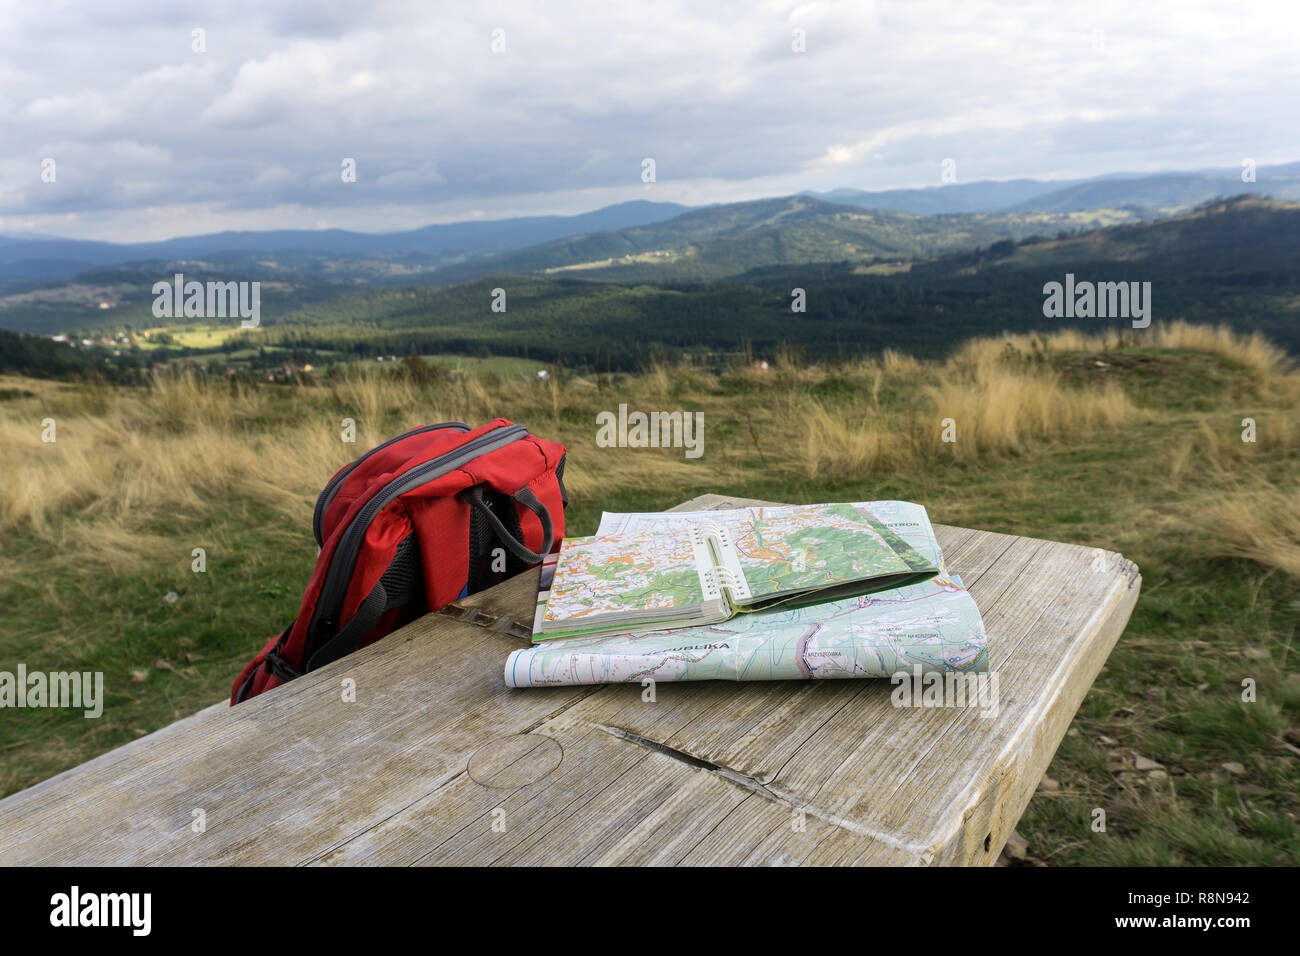 Banco de madera con mapas de caminatas y la mochila. Paisaje de montaña en el fondo, a nadie. Beskydy Silesia, Polonia. Foto de stock